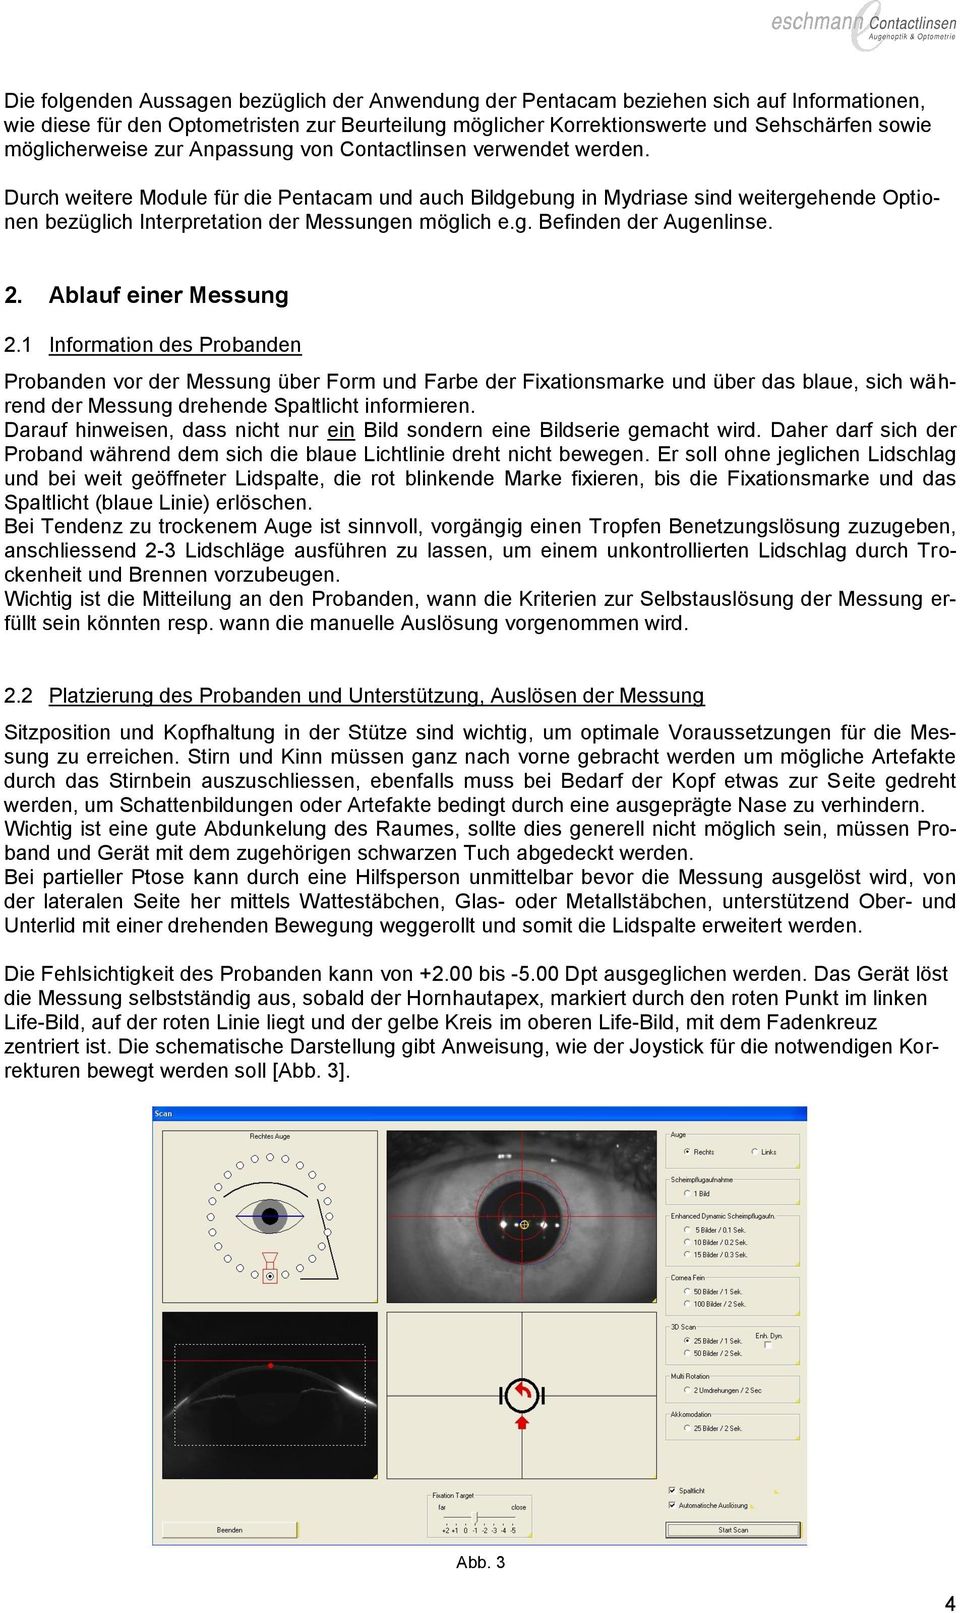 Durch weitere Module für die Pentacam und auch Bildgebung in Mydriase sind weitergehende Optionen bezüglich Interpretation der Messungen möglich e.g. Befinden der Augenlinse. 2.